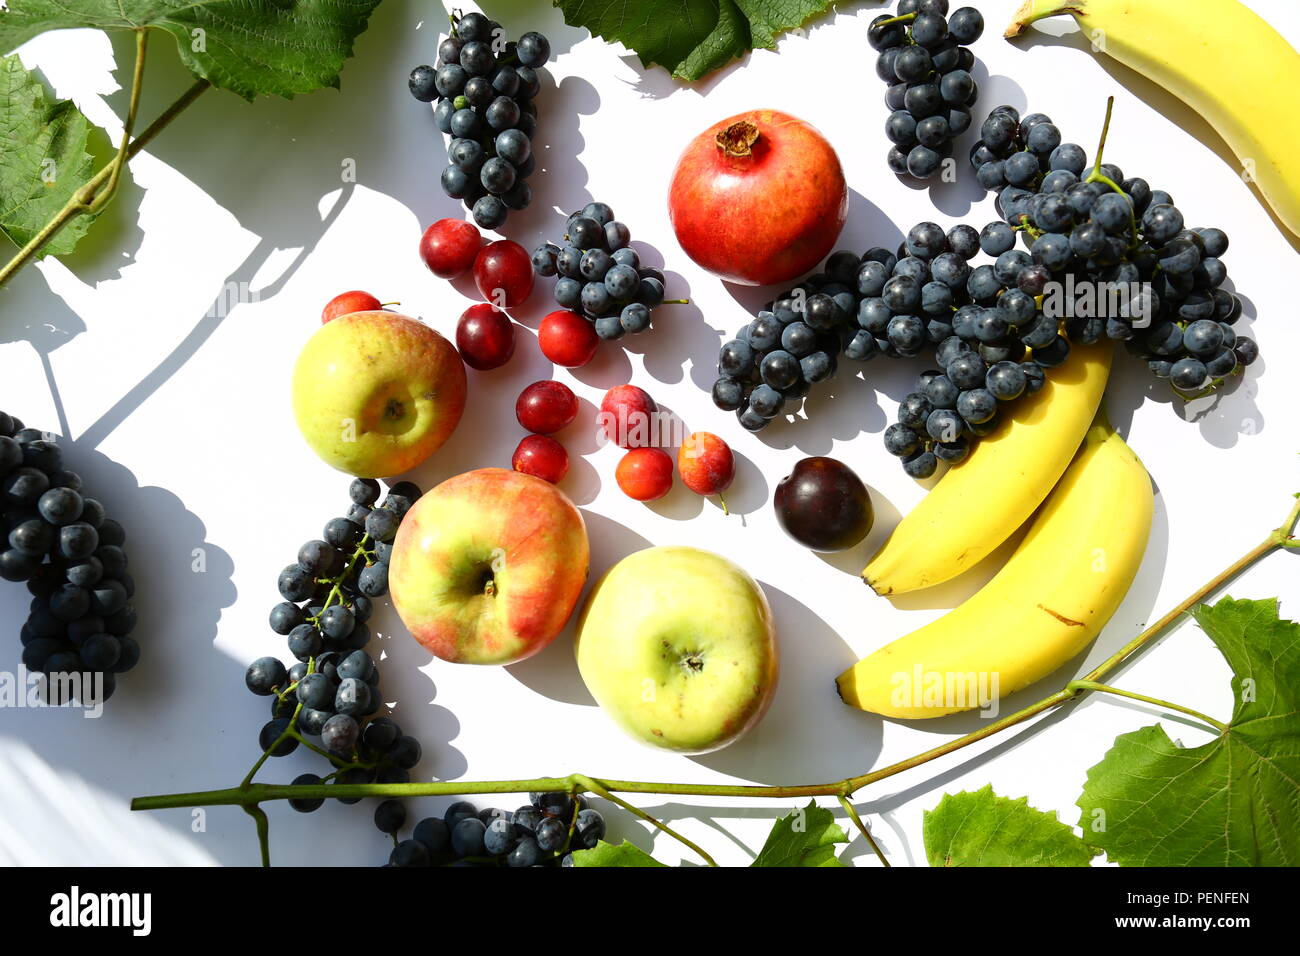 L'alimentation : le raisin, les pommes, les prunes et les bananes Banque D'Images